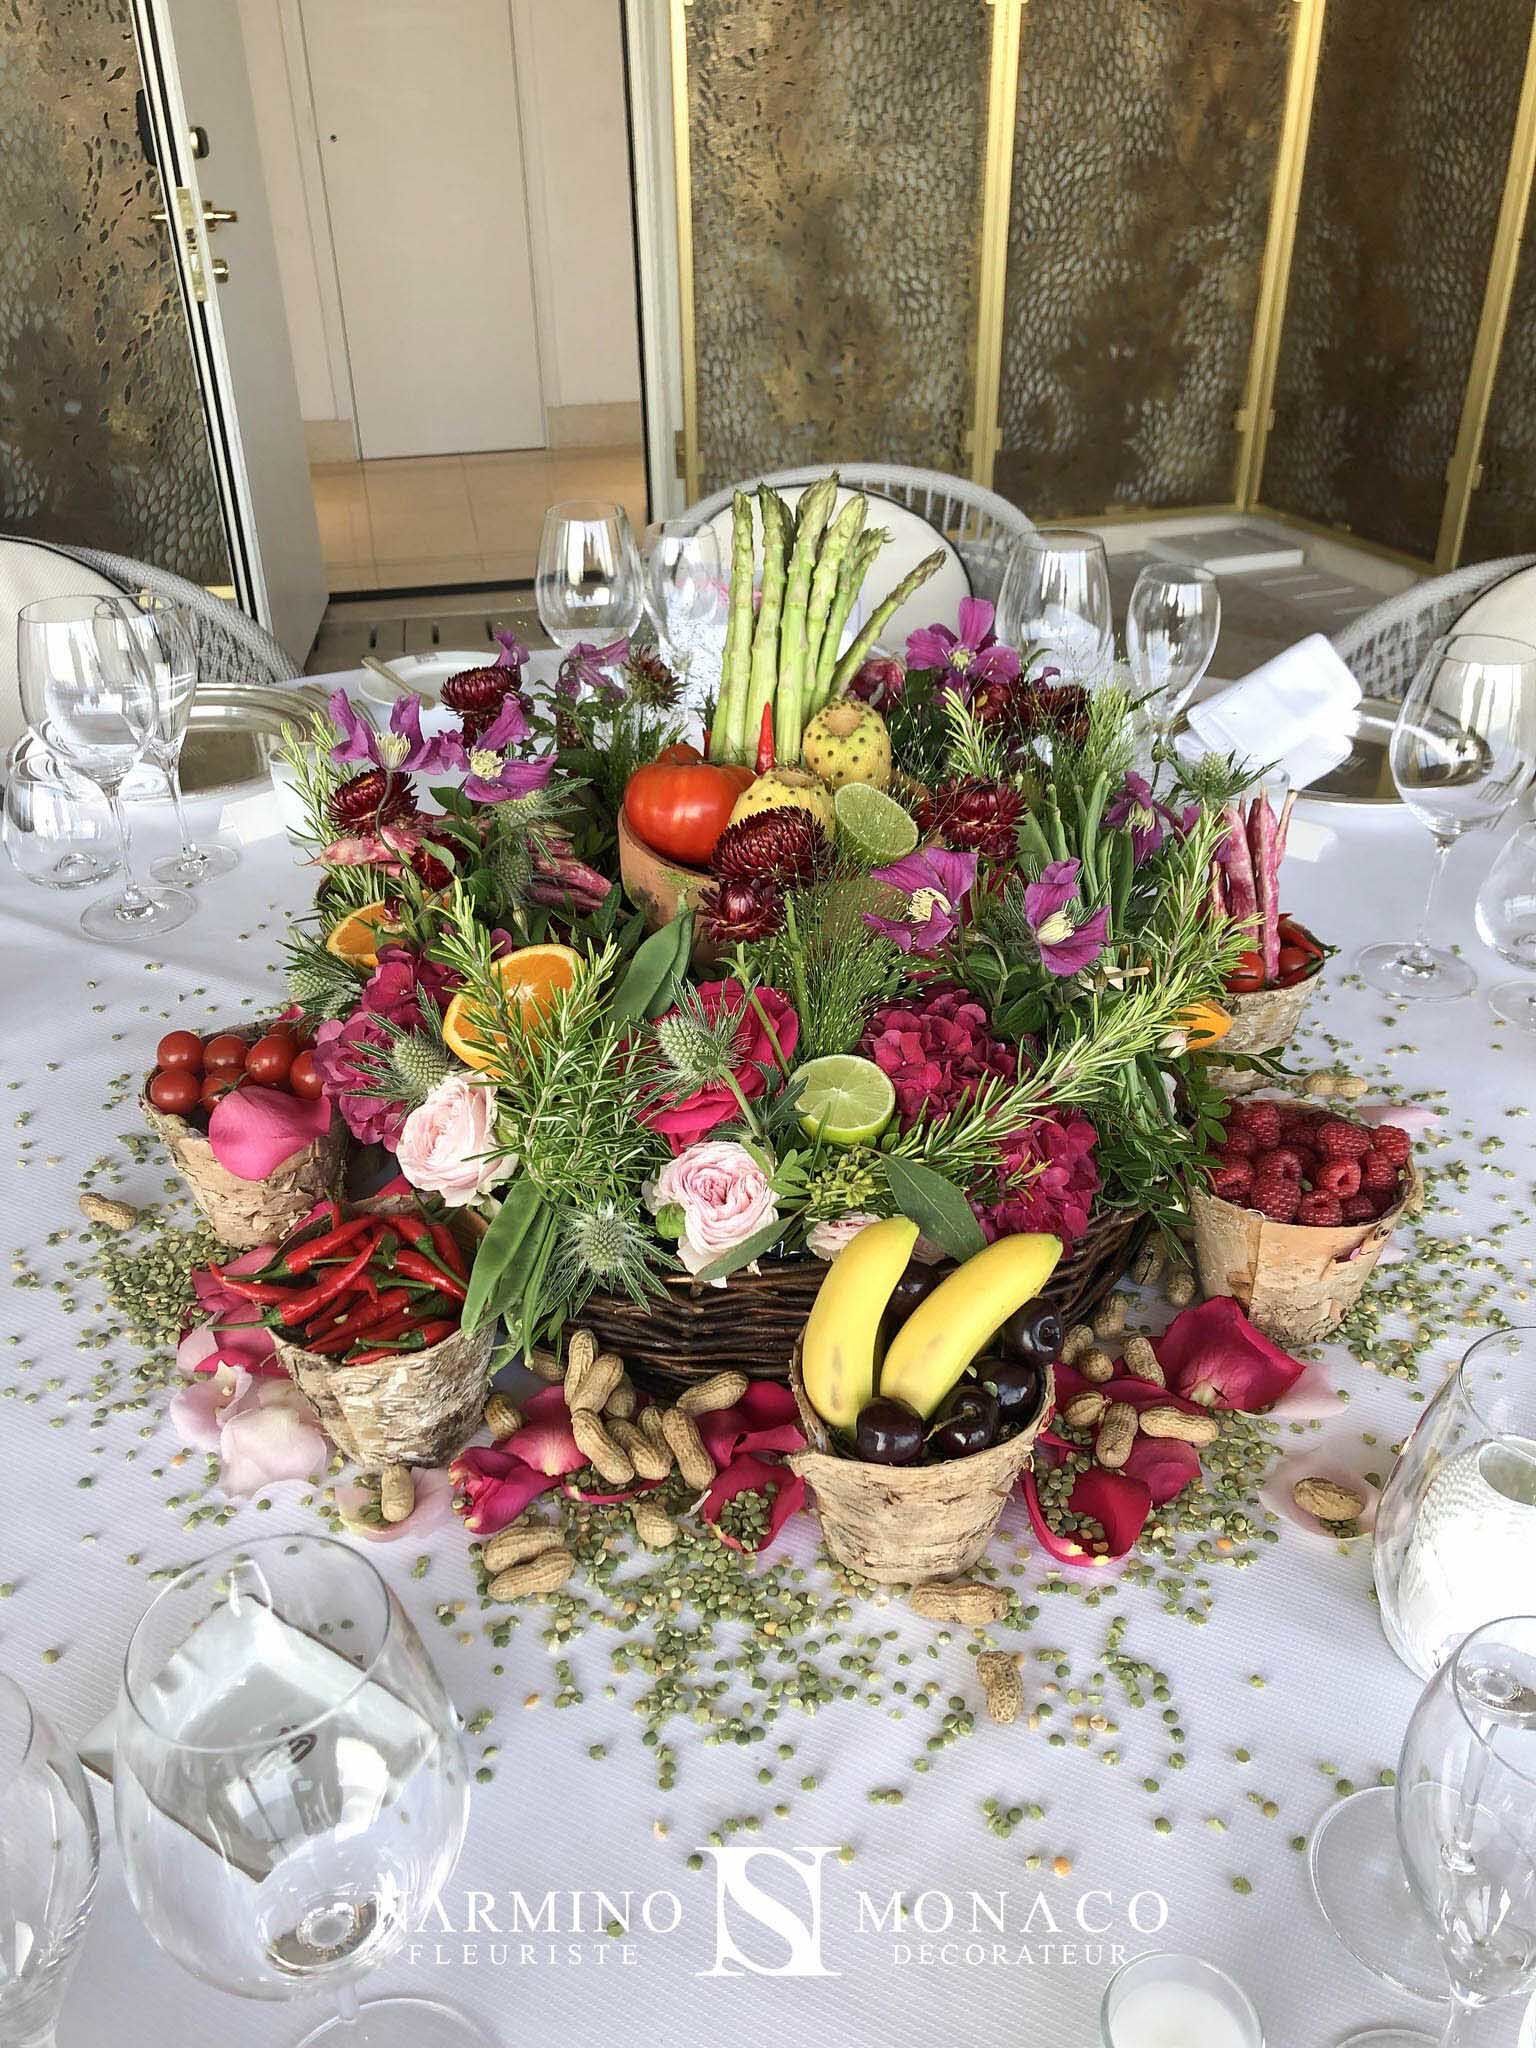 Une splendide composition florale pour un centre de table, une réalisation Narmino